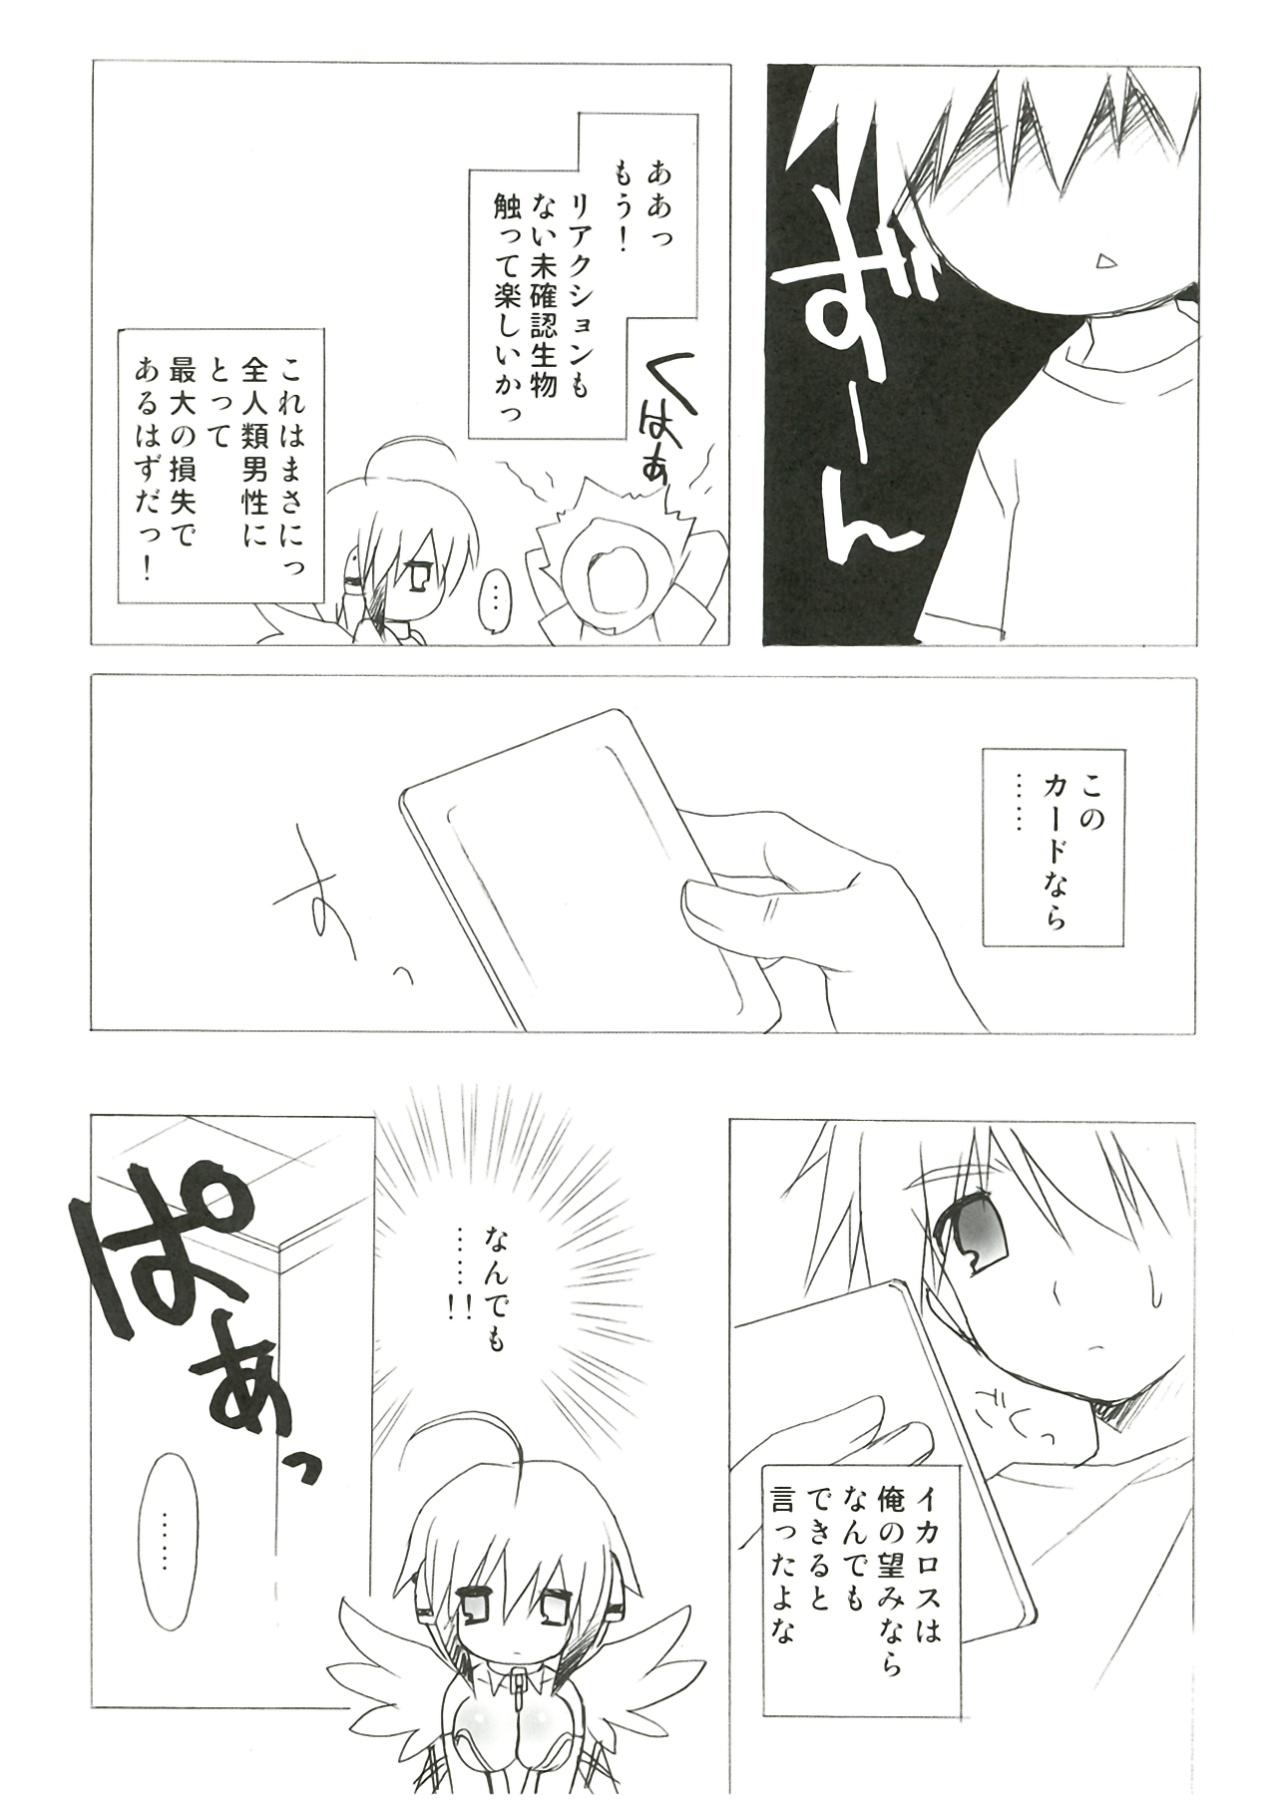 Boquete Kokoro no Otoshimono - Sora no otoshimono Licking Pussy - Page 10